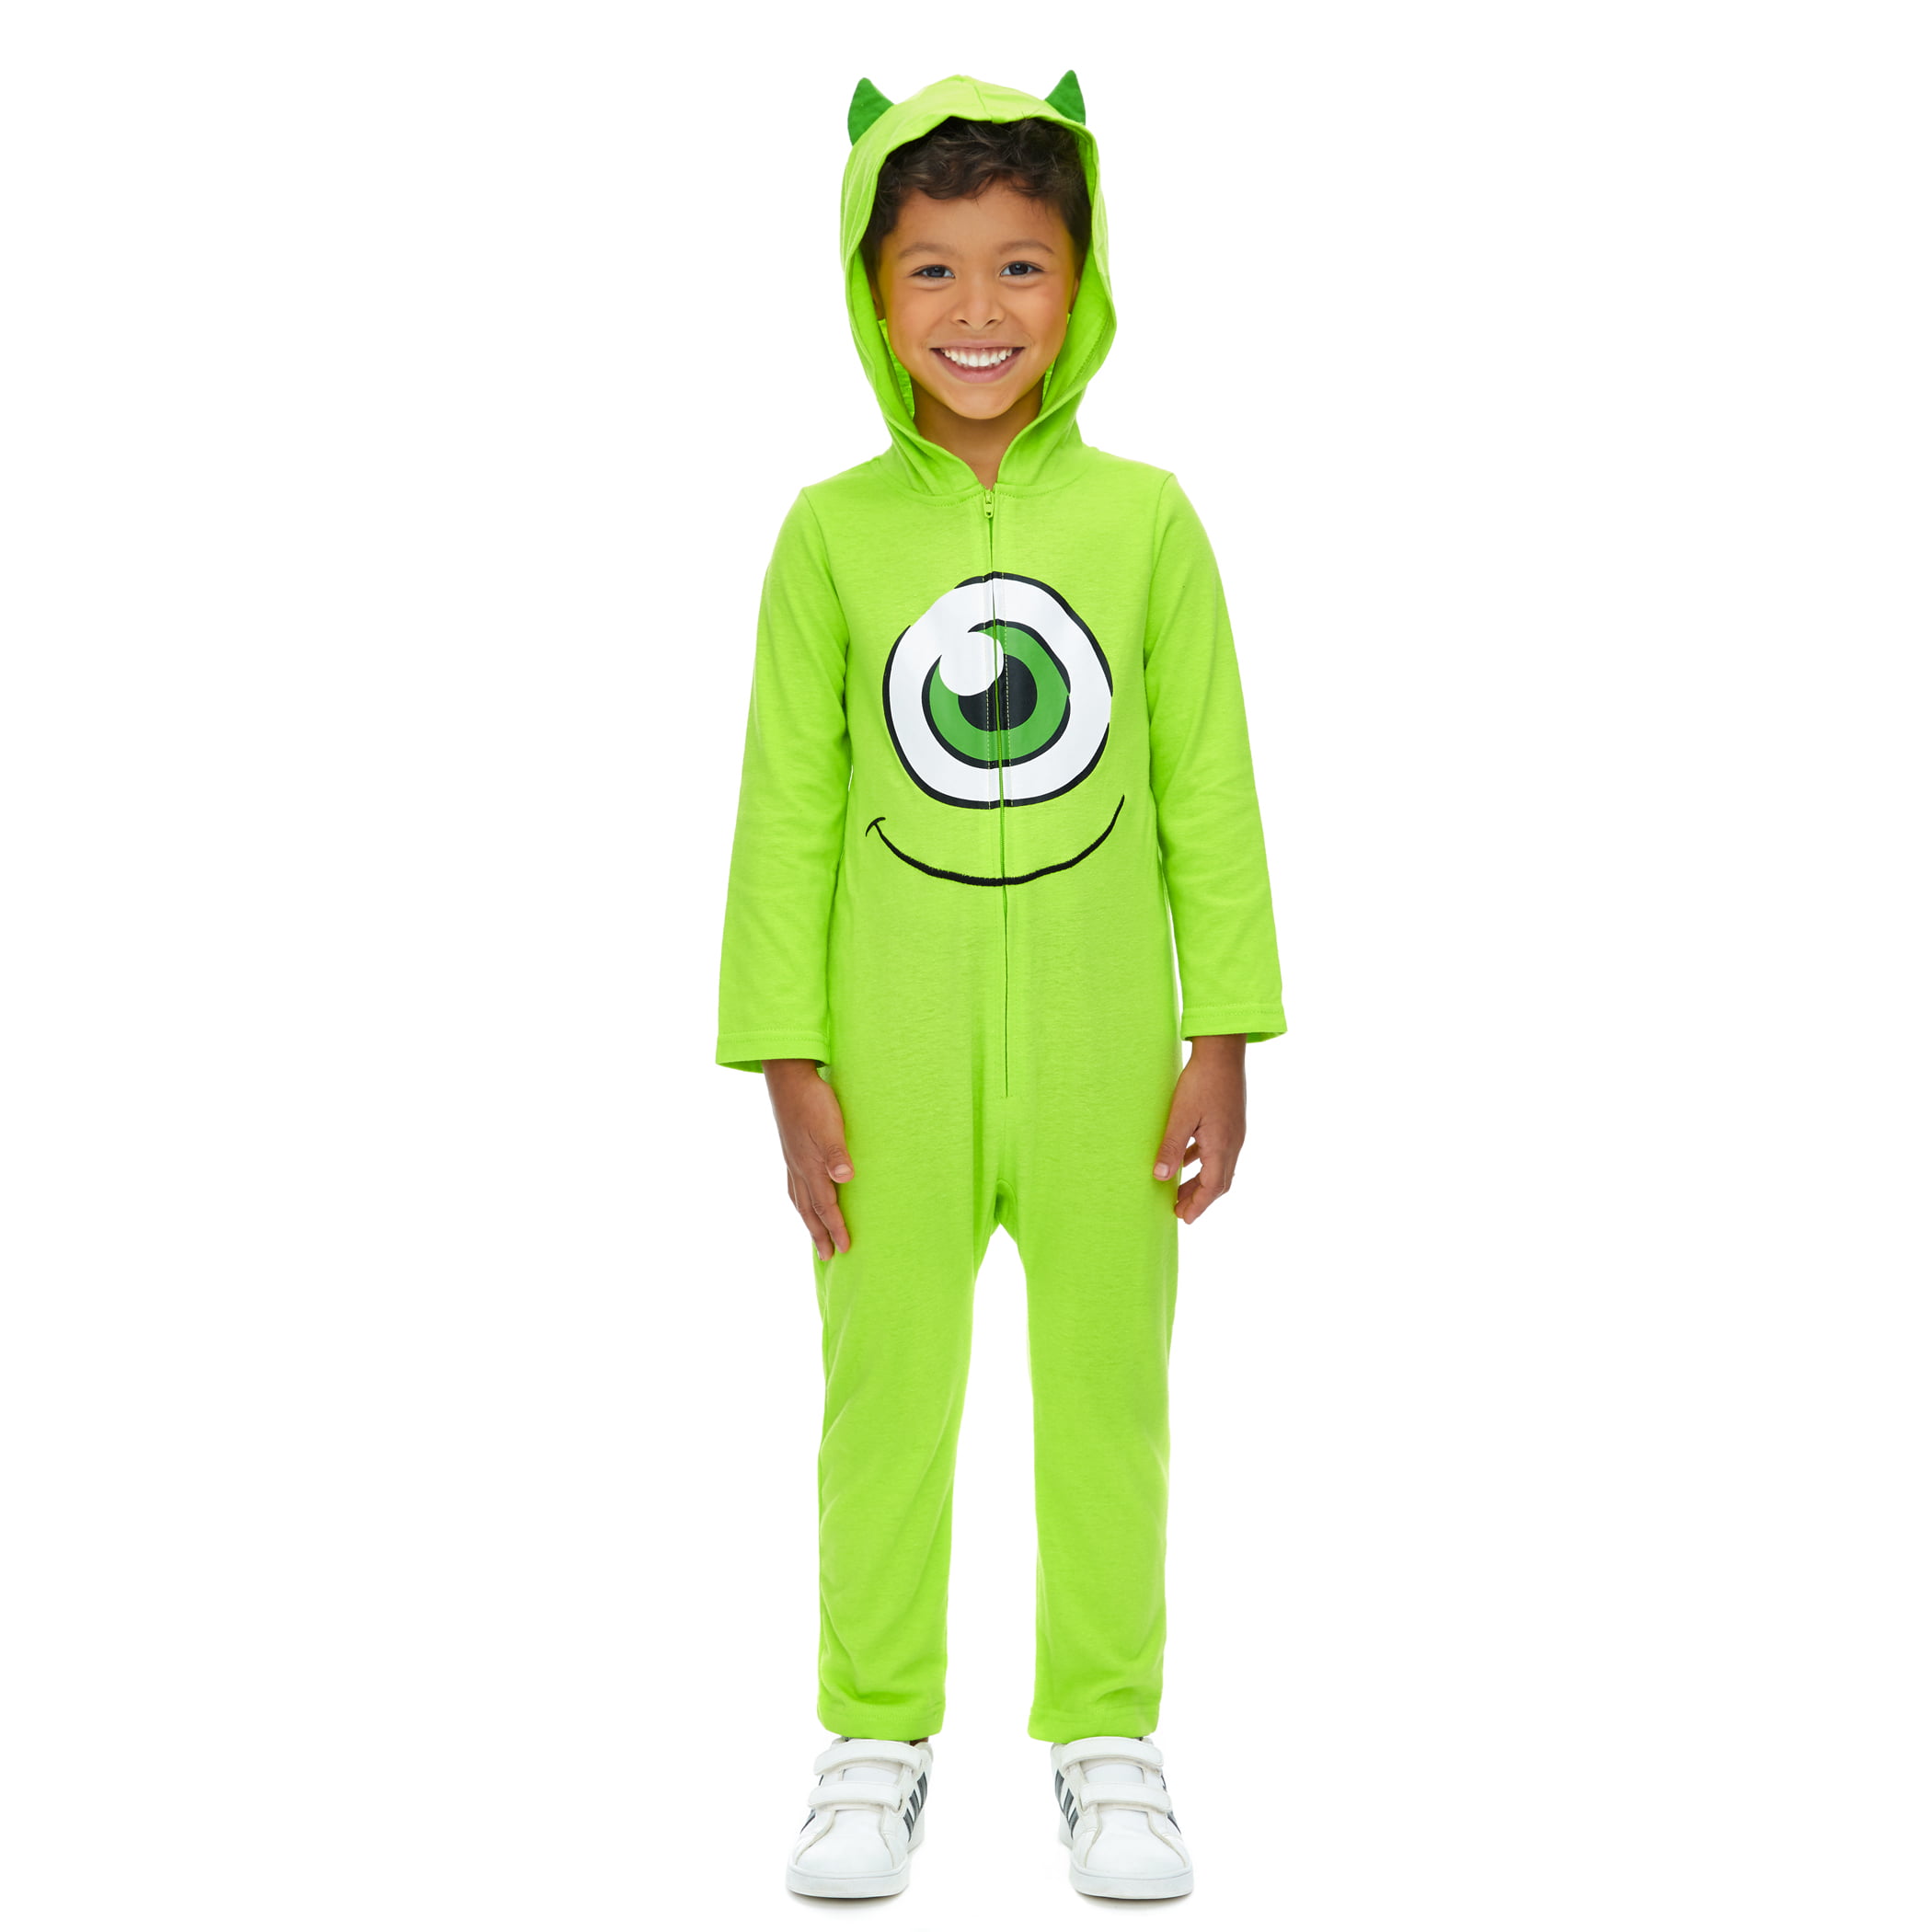 Disney Pixar Monsters Inc Mike Wazowski Boy's Fancy-Dress Costume, 3T